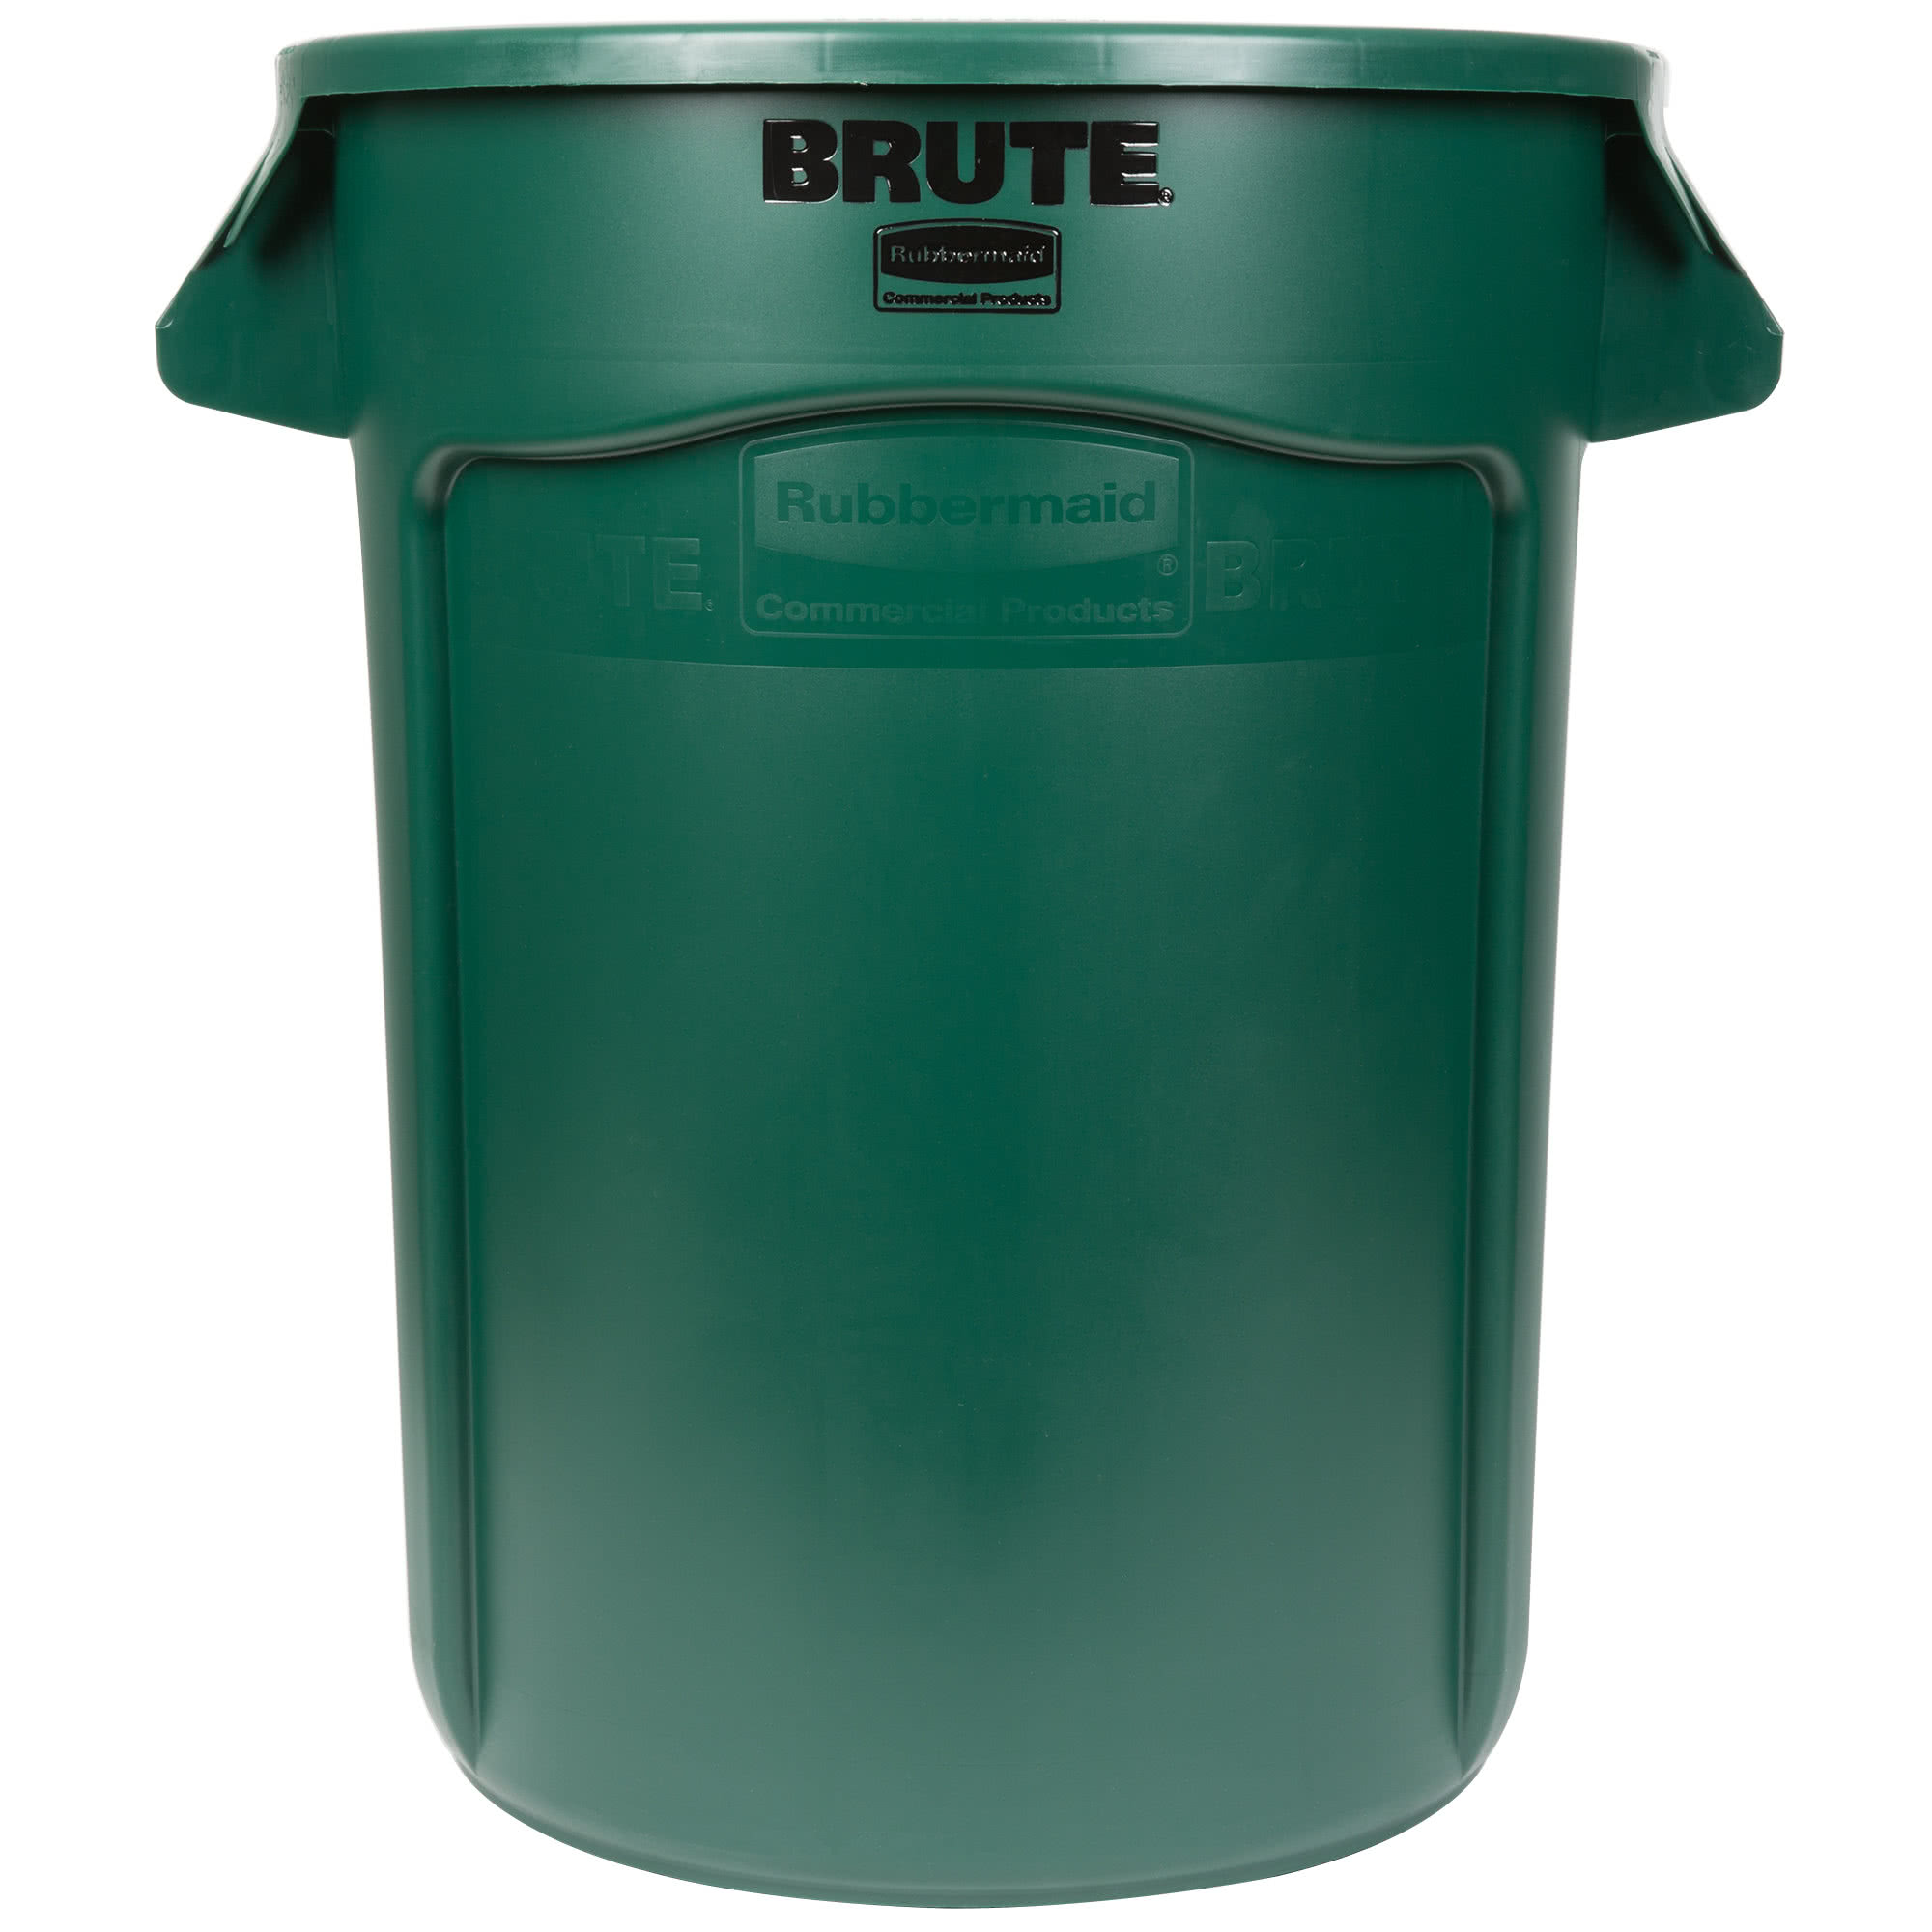 Rubbermaid FG263200DGRN contenedor Brute color verde con capacidad para 32 galones